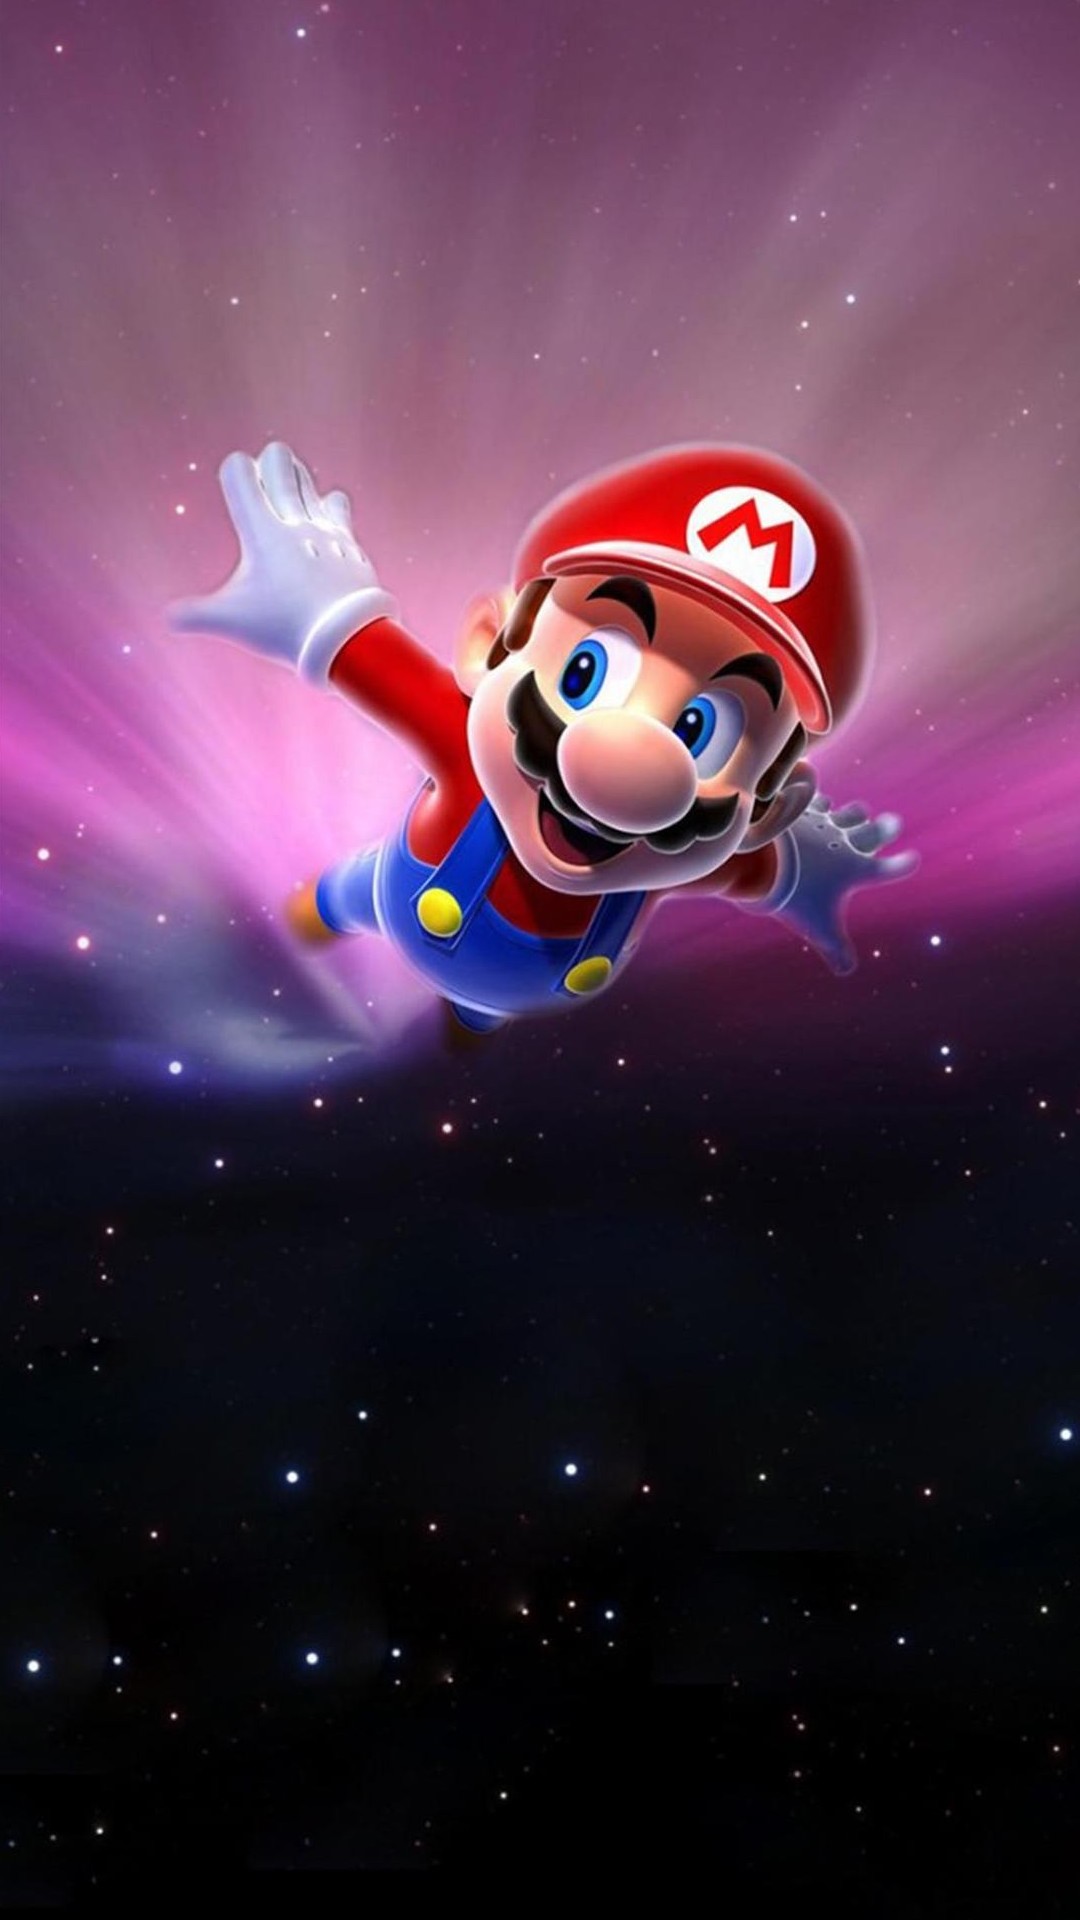 Super Mario Phone Wallpaper - WallpaperSafari